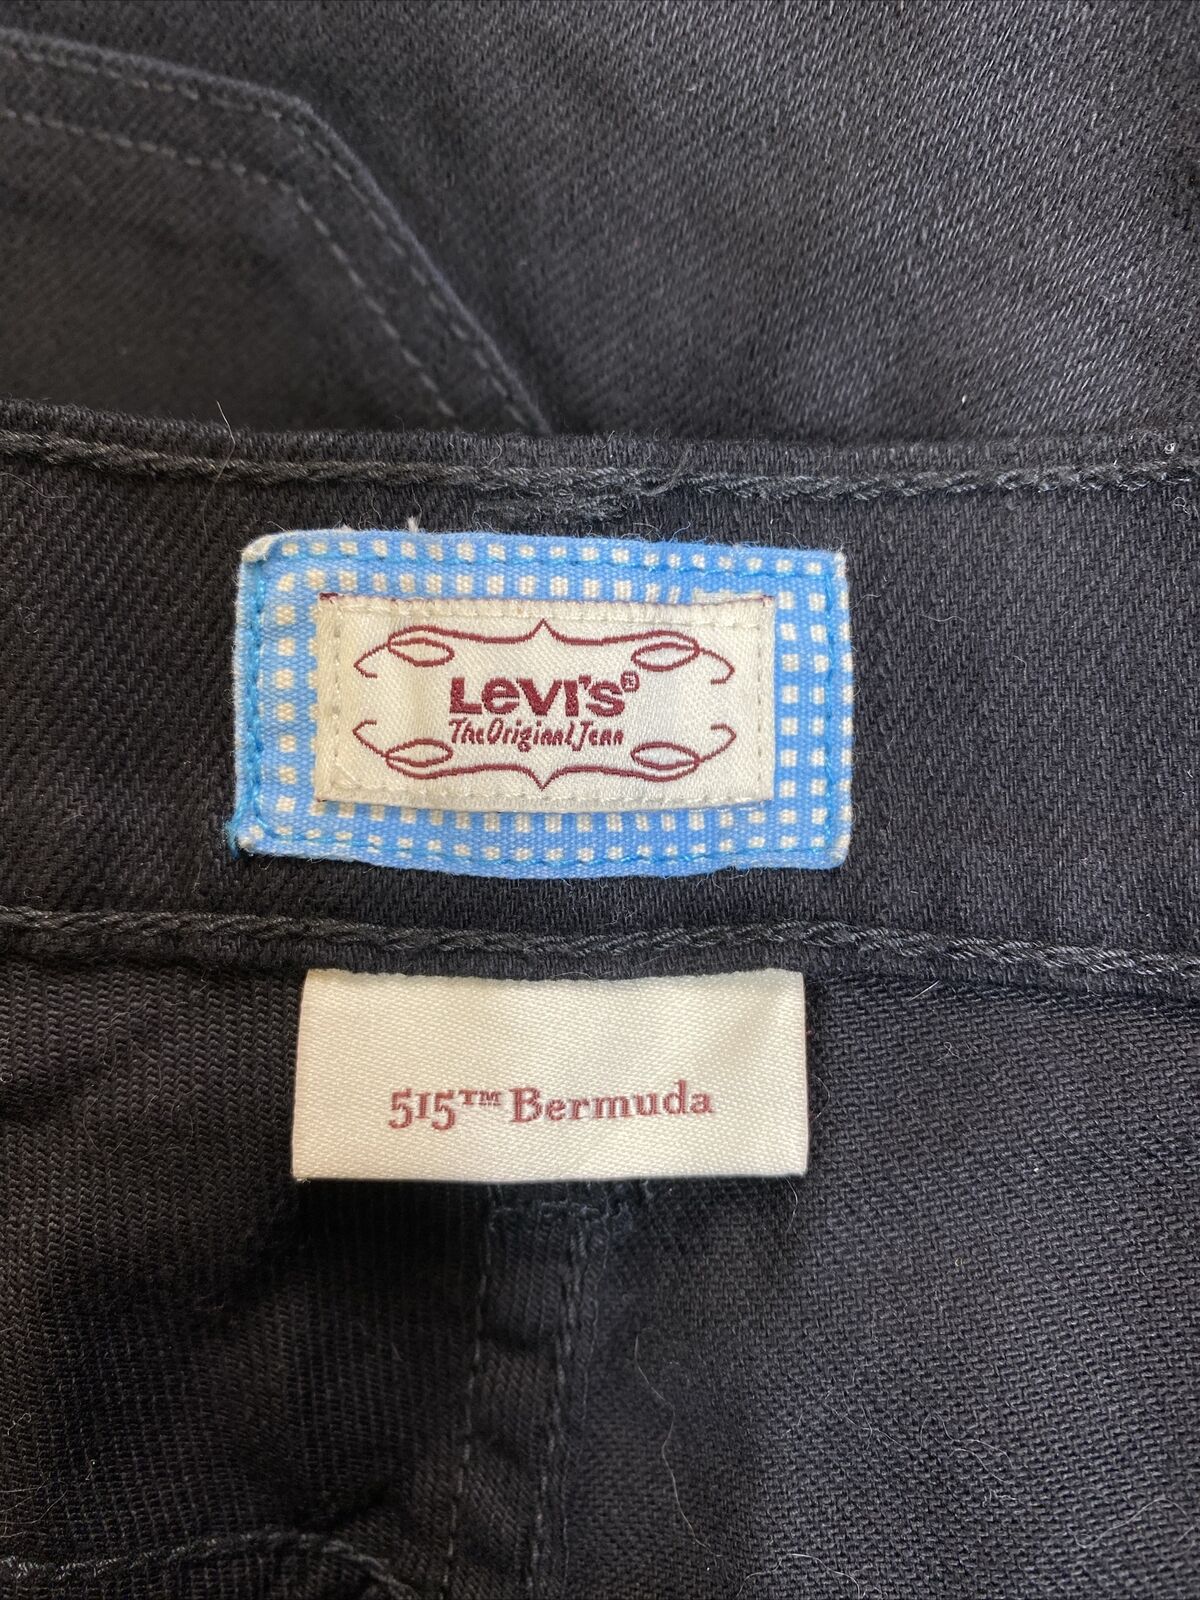 Levis Women's Black 515 Bermuda Jean Shorts - 10